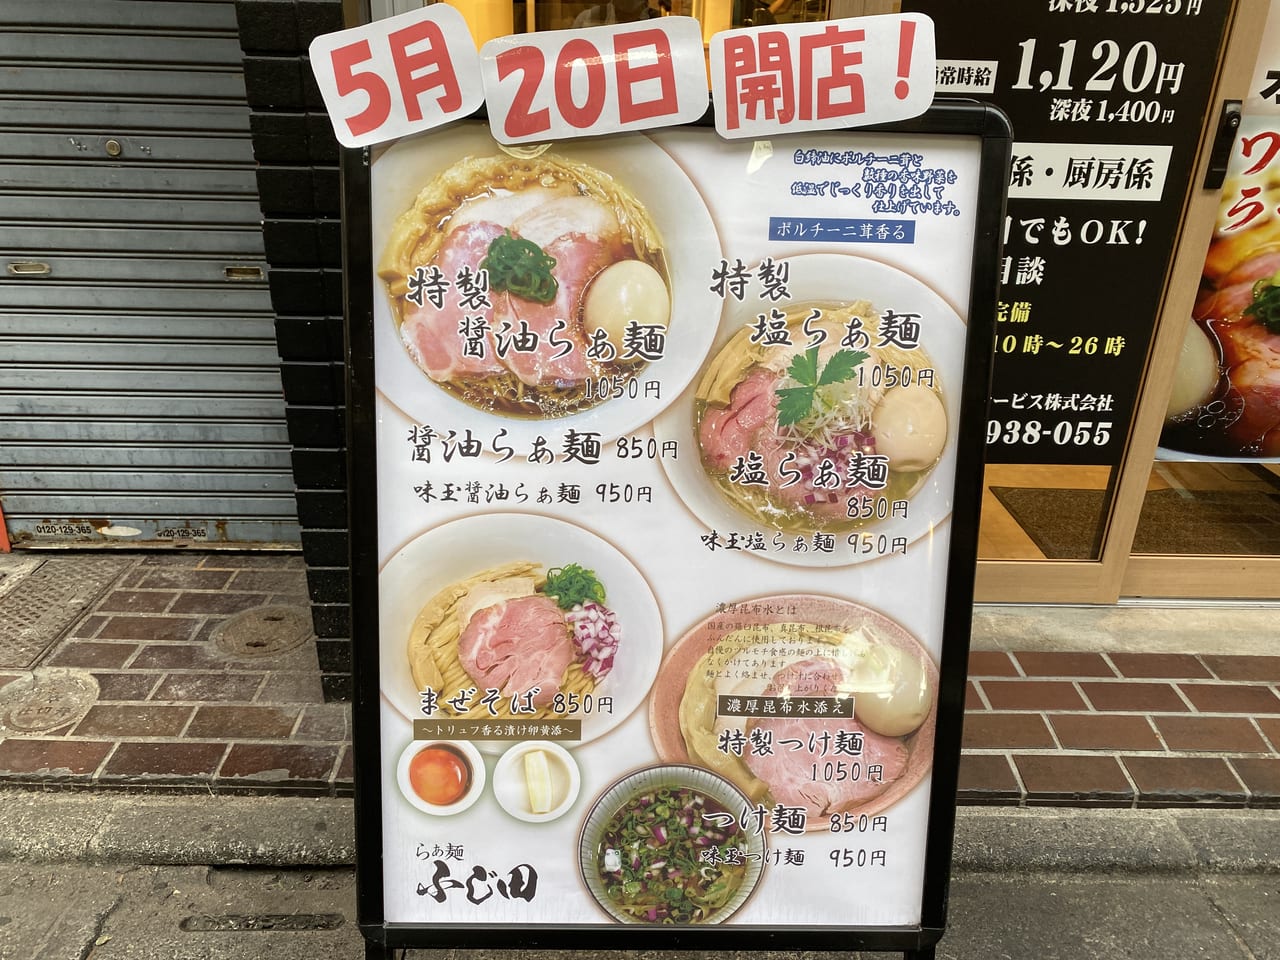 らぁ麺ふじ田 5月20日オープン